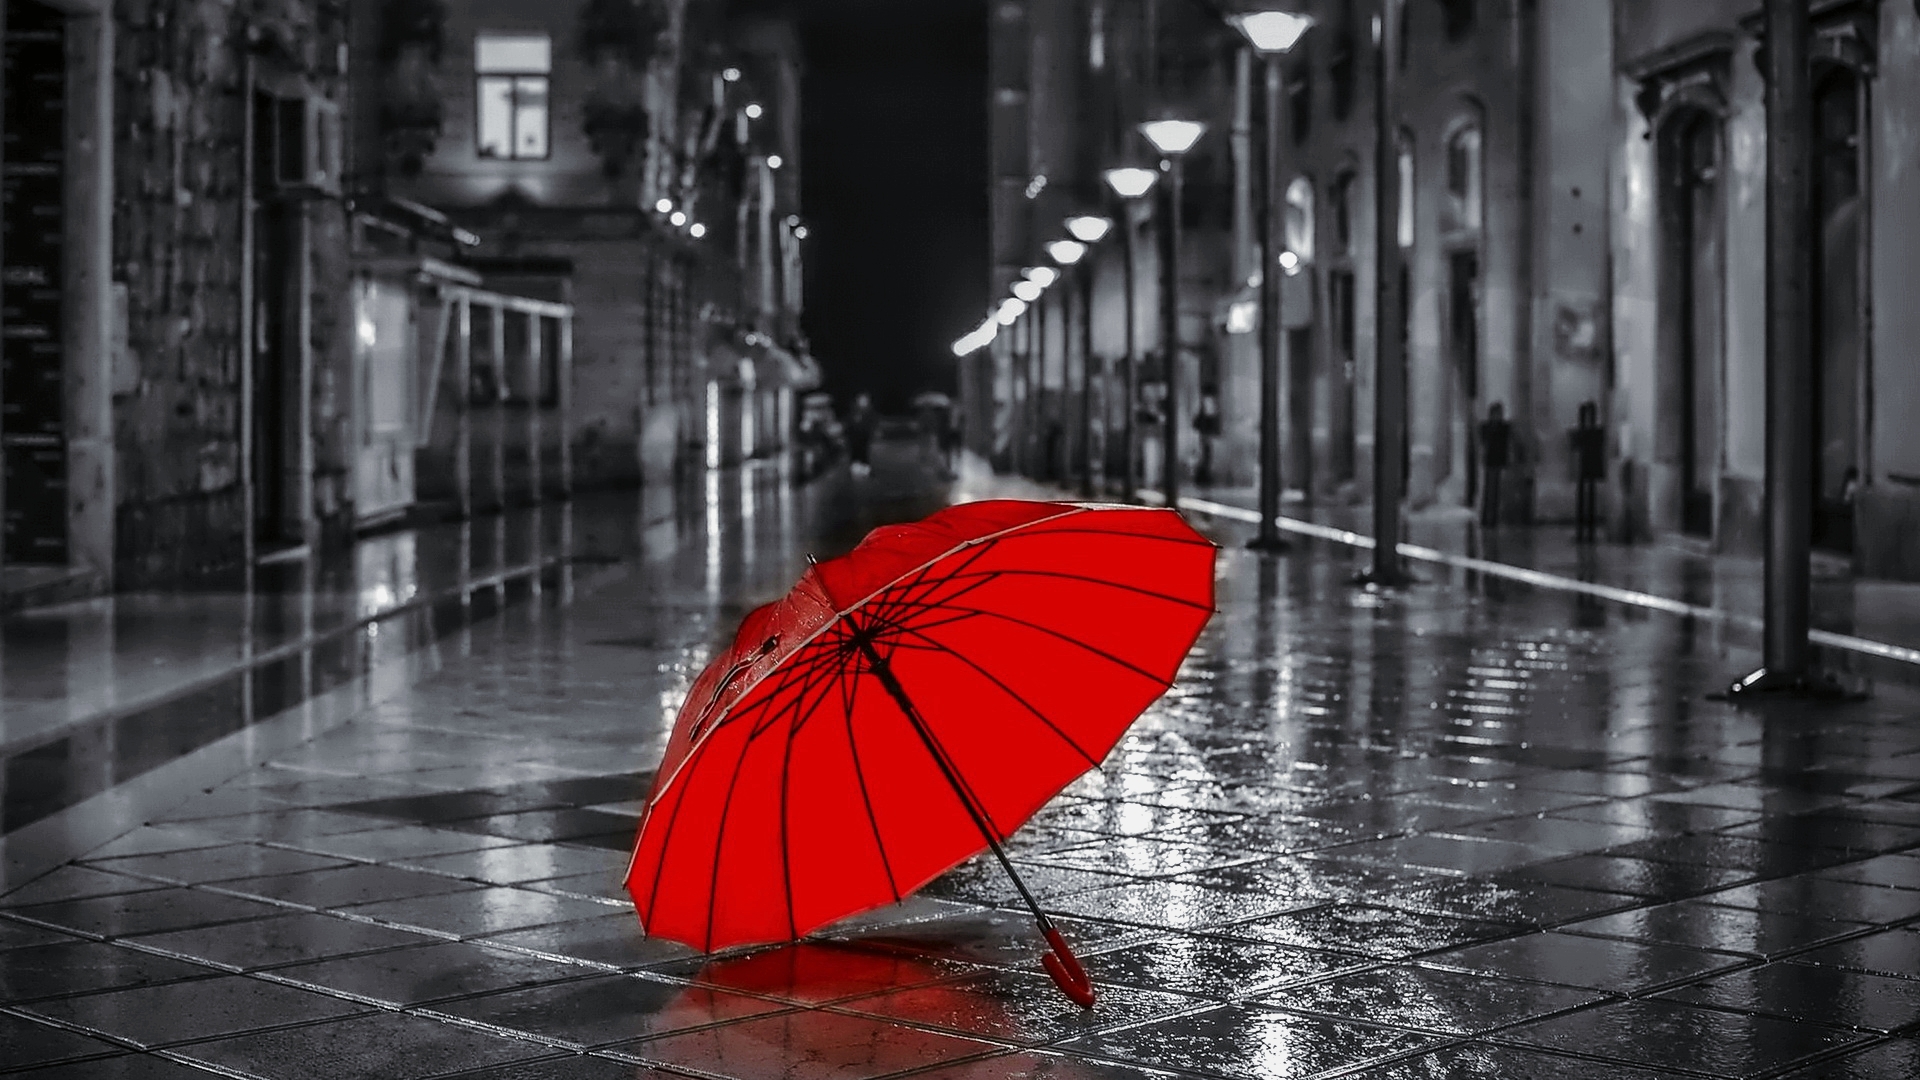 Раскрытый красный зонт лежит на улице ночного города